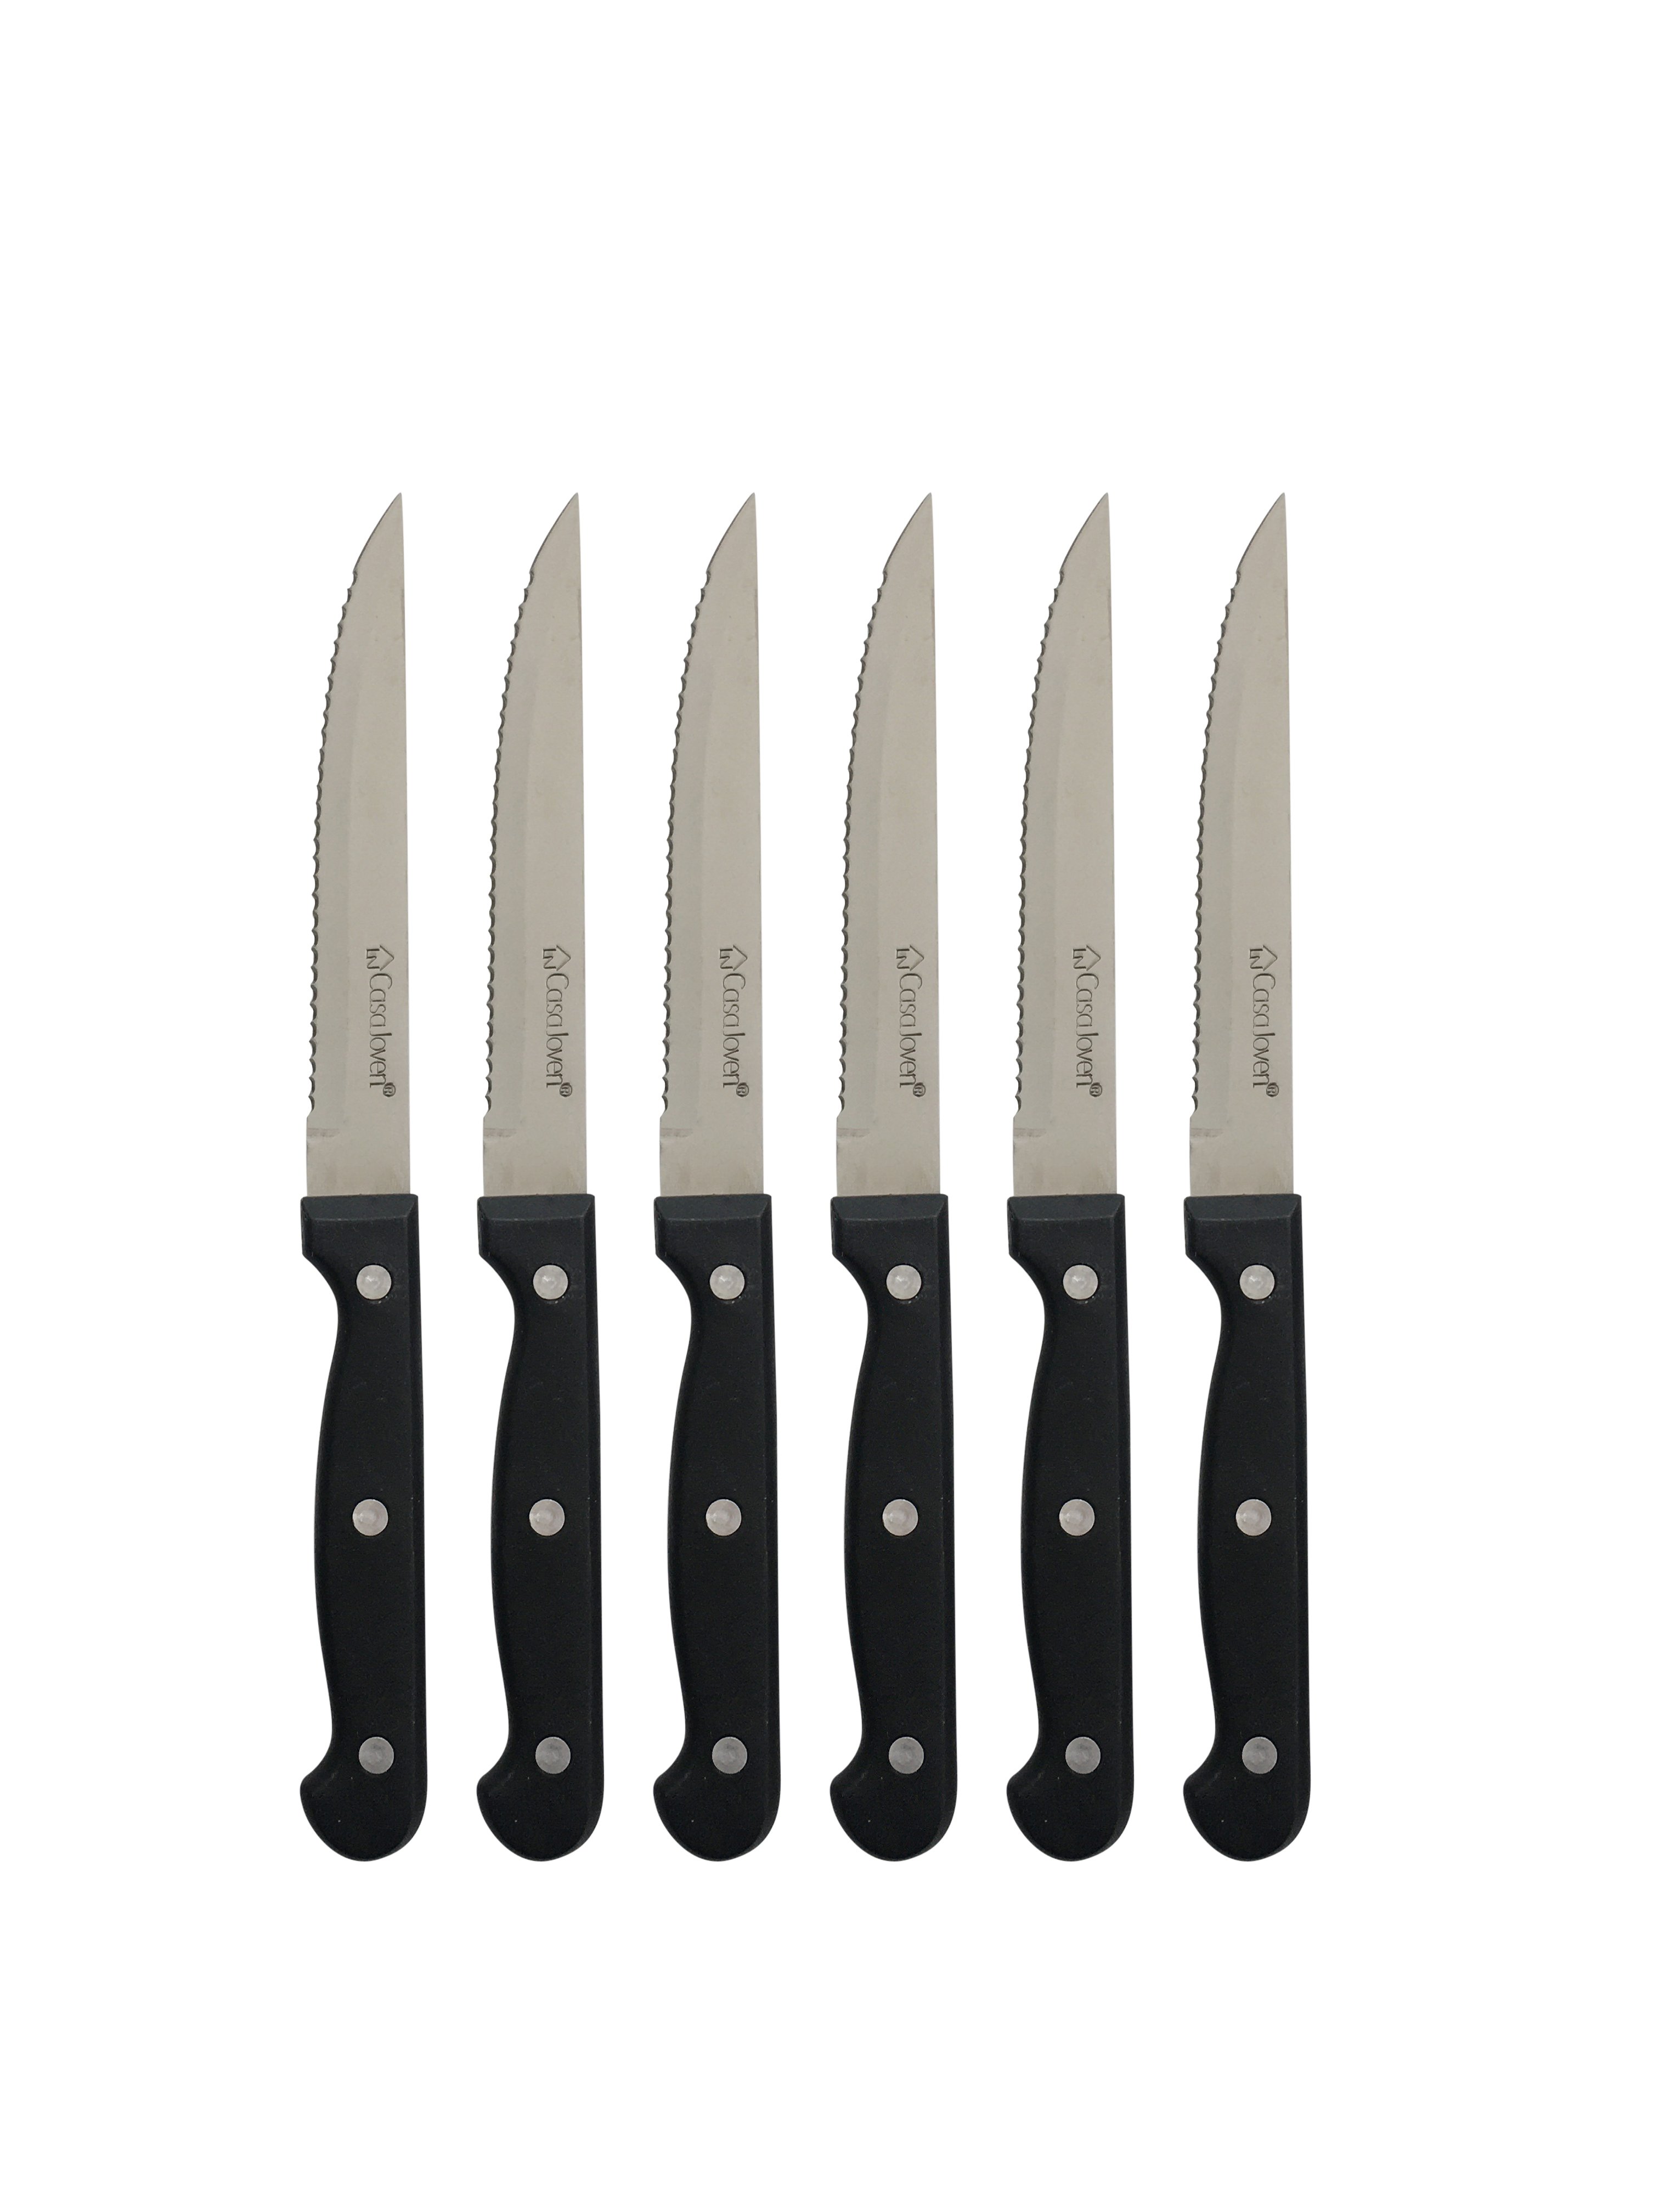 Set de 6 cuchillos para carne inoxidables (colores surtidos) 21cm